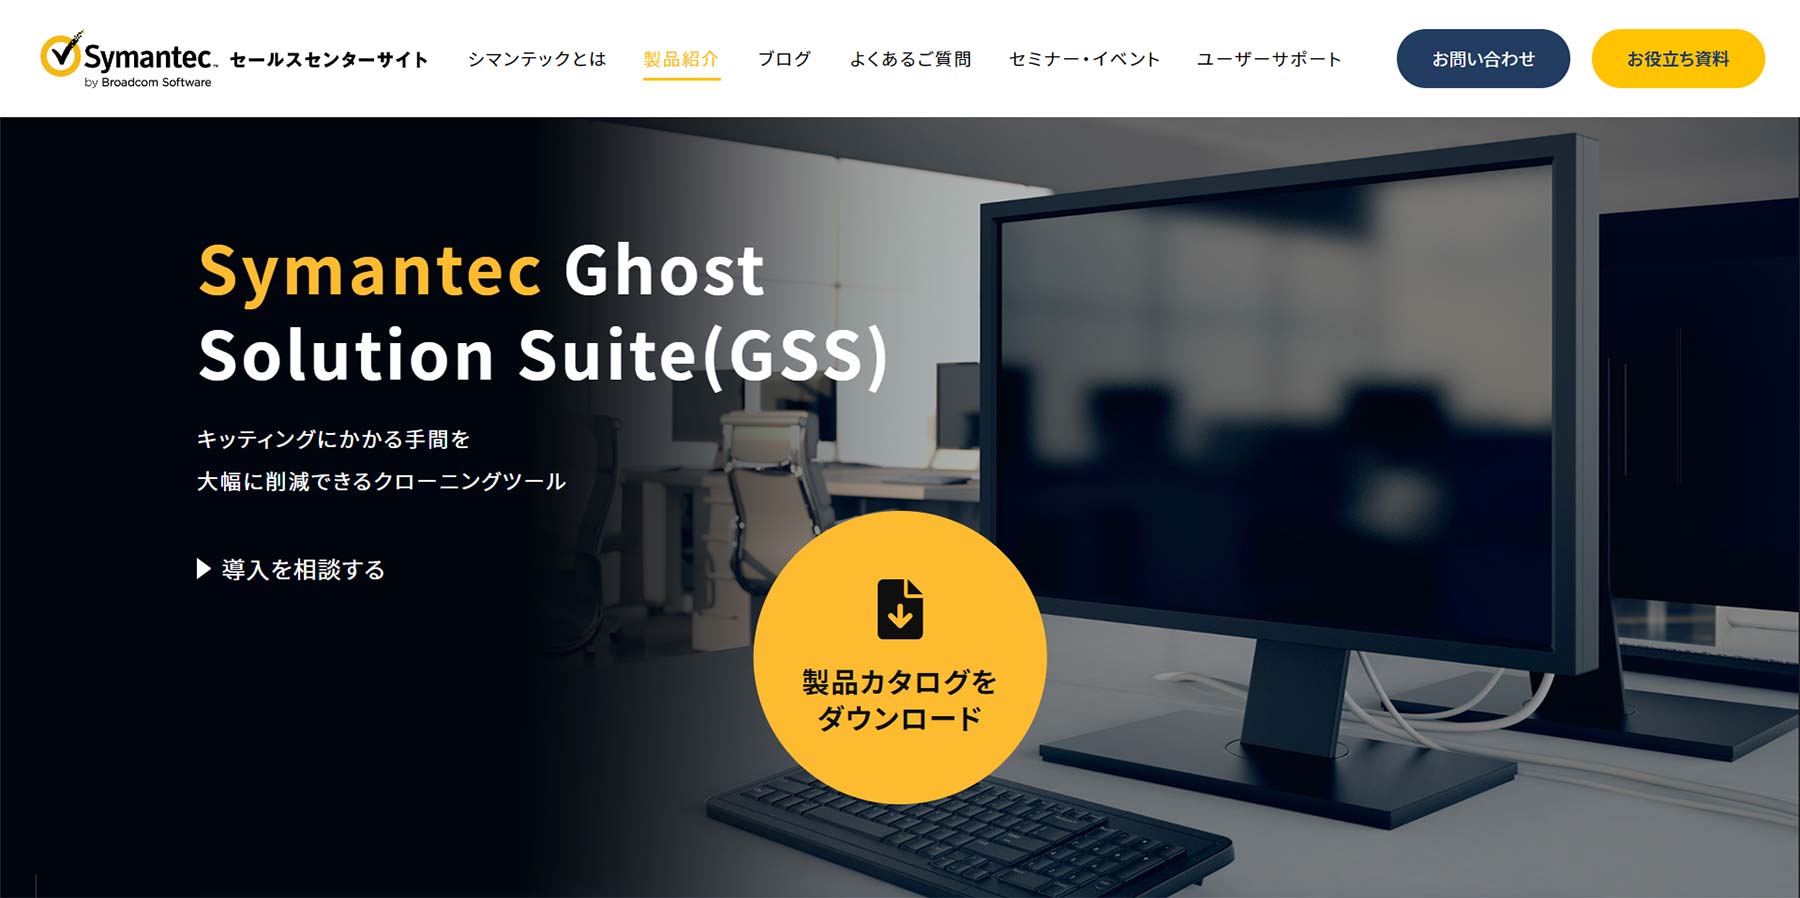 Symantec Ghost Solution Suite公式Webサイト